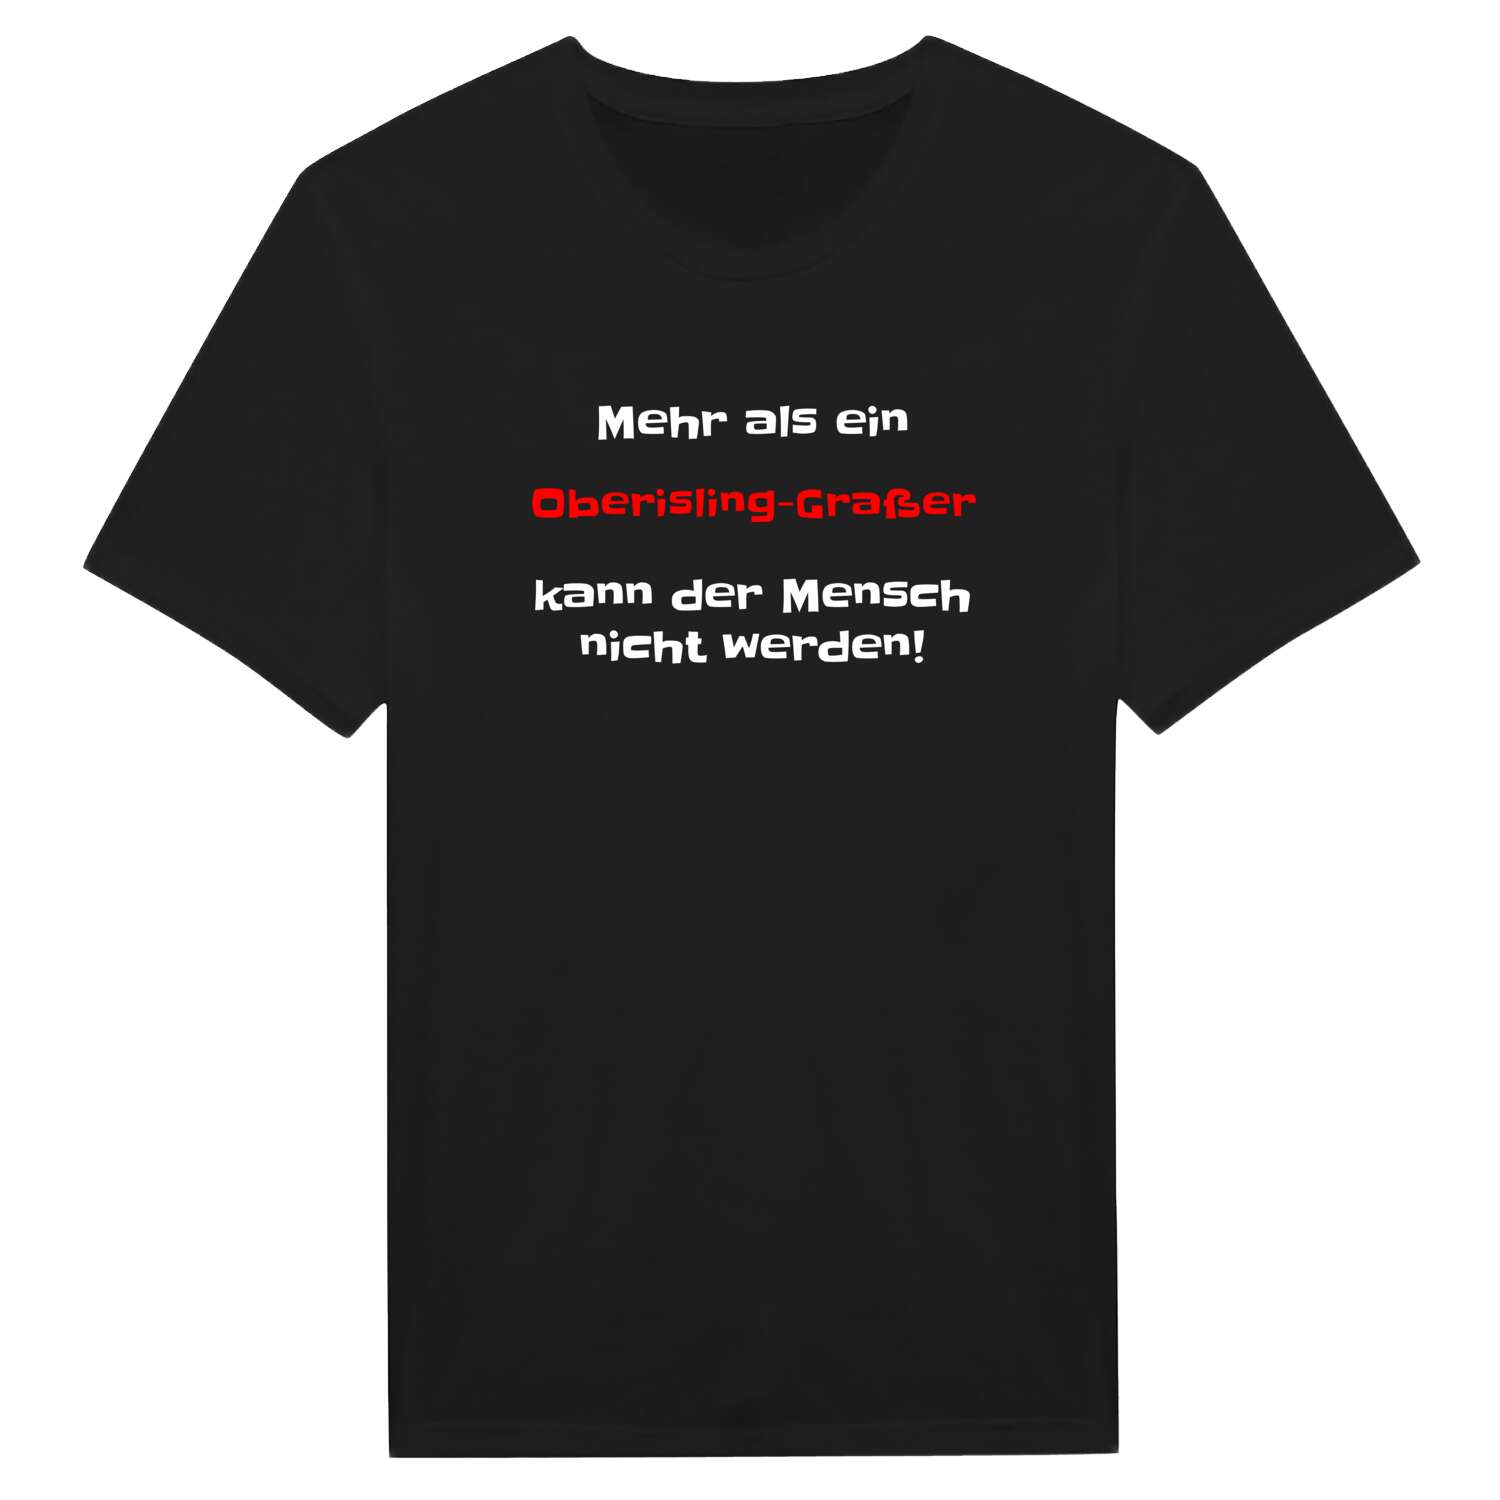 Oberisling-Graß T-Shirt »Mehr als ein«